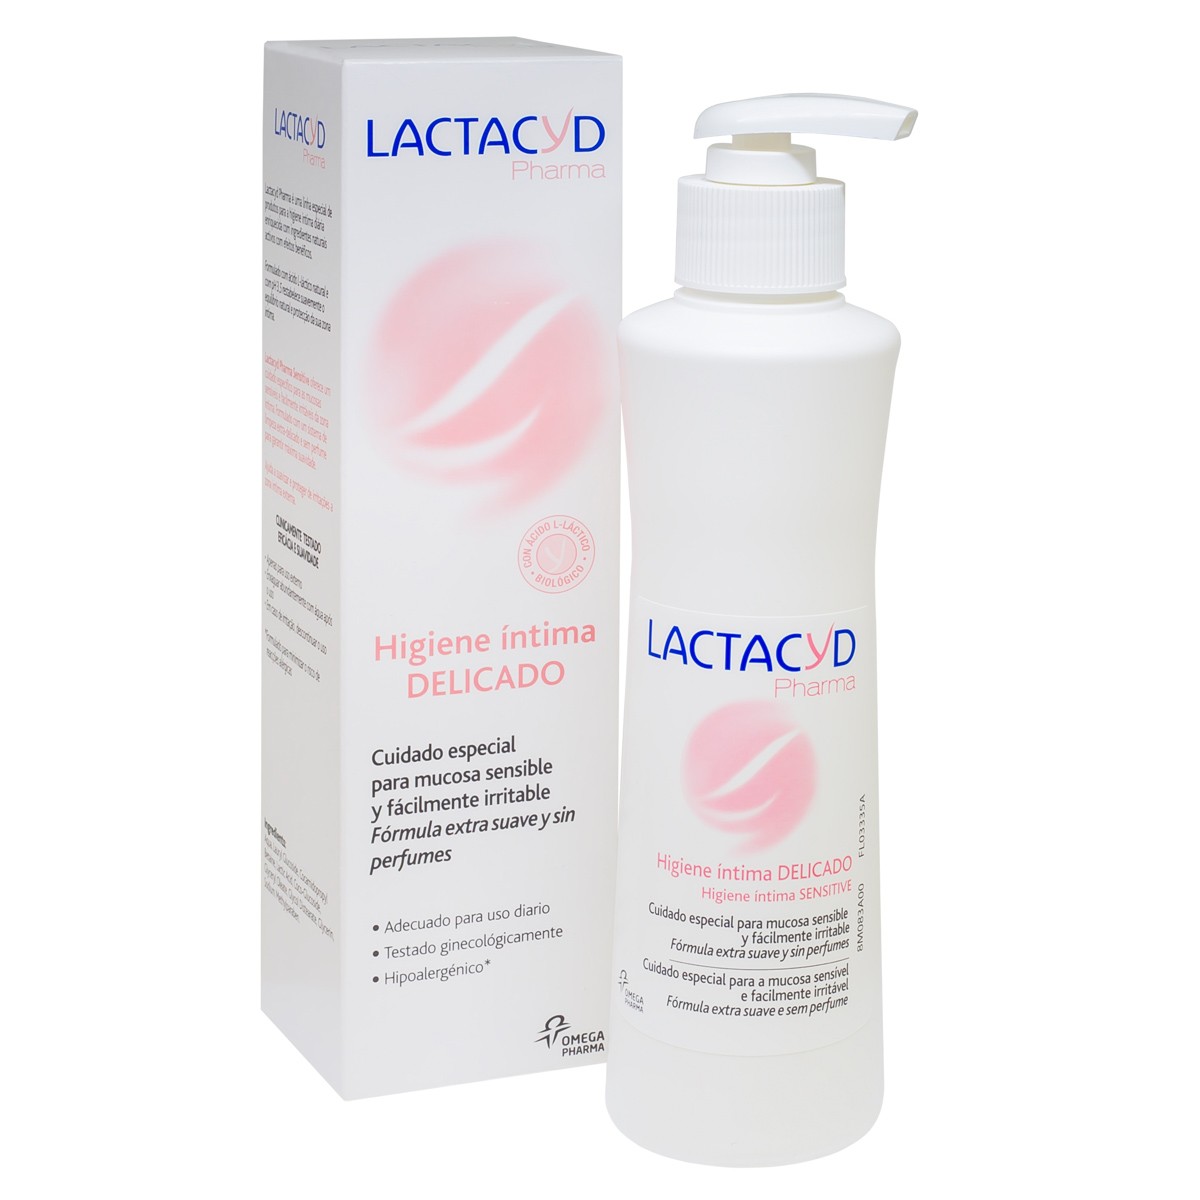 Lactacyd pharma delicado 250ml.